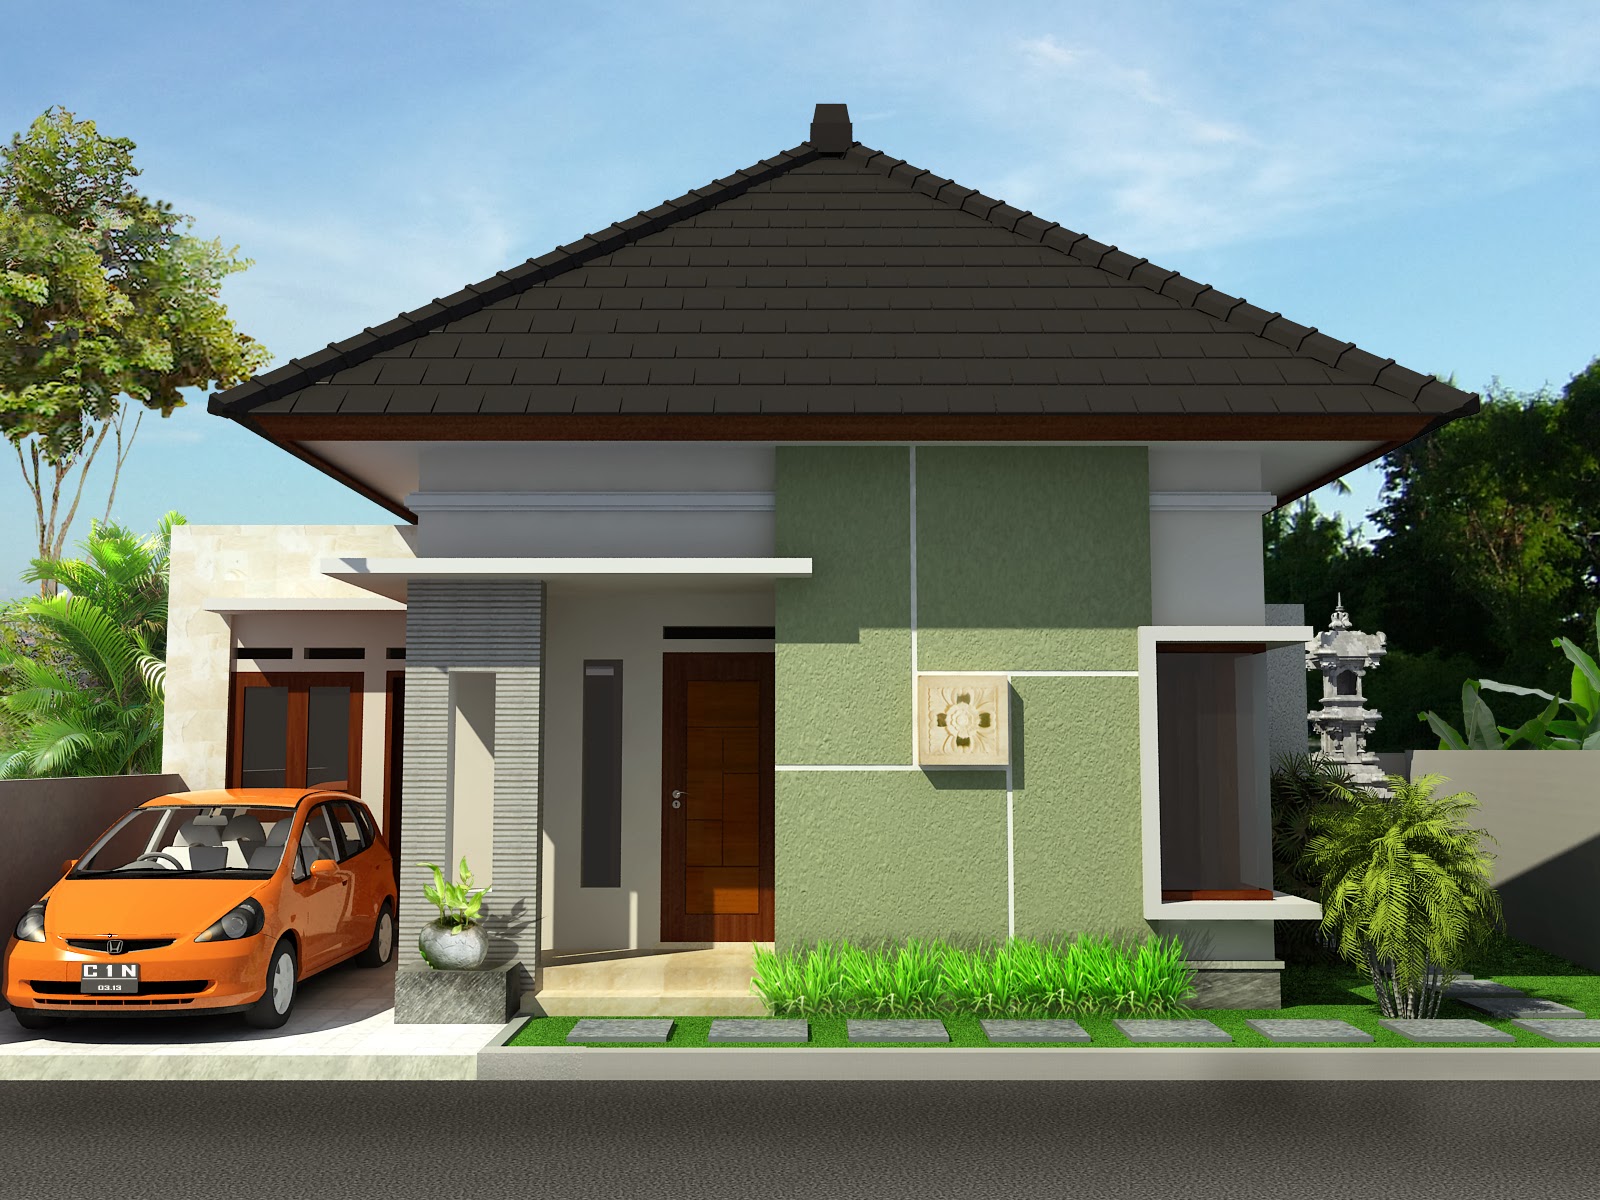 Desain Rumah  Minimalis  1  Lantai  Sederhana  Terbaru 2019